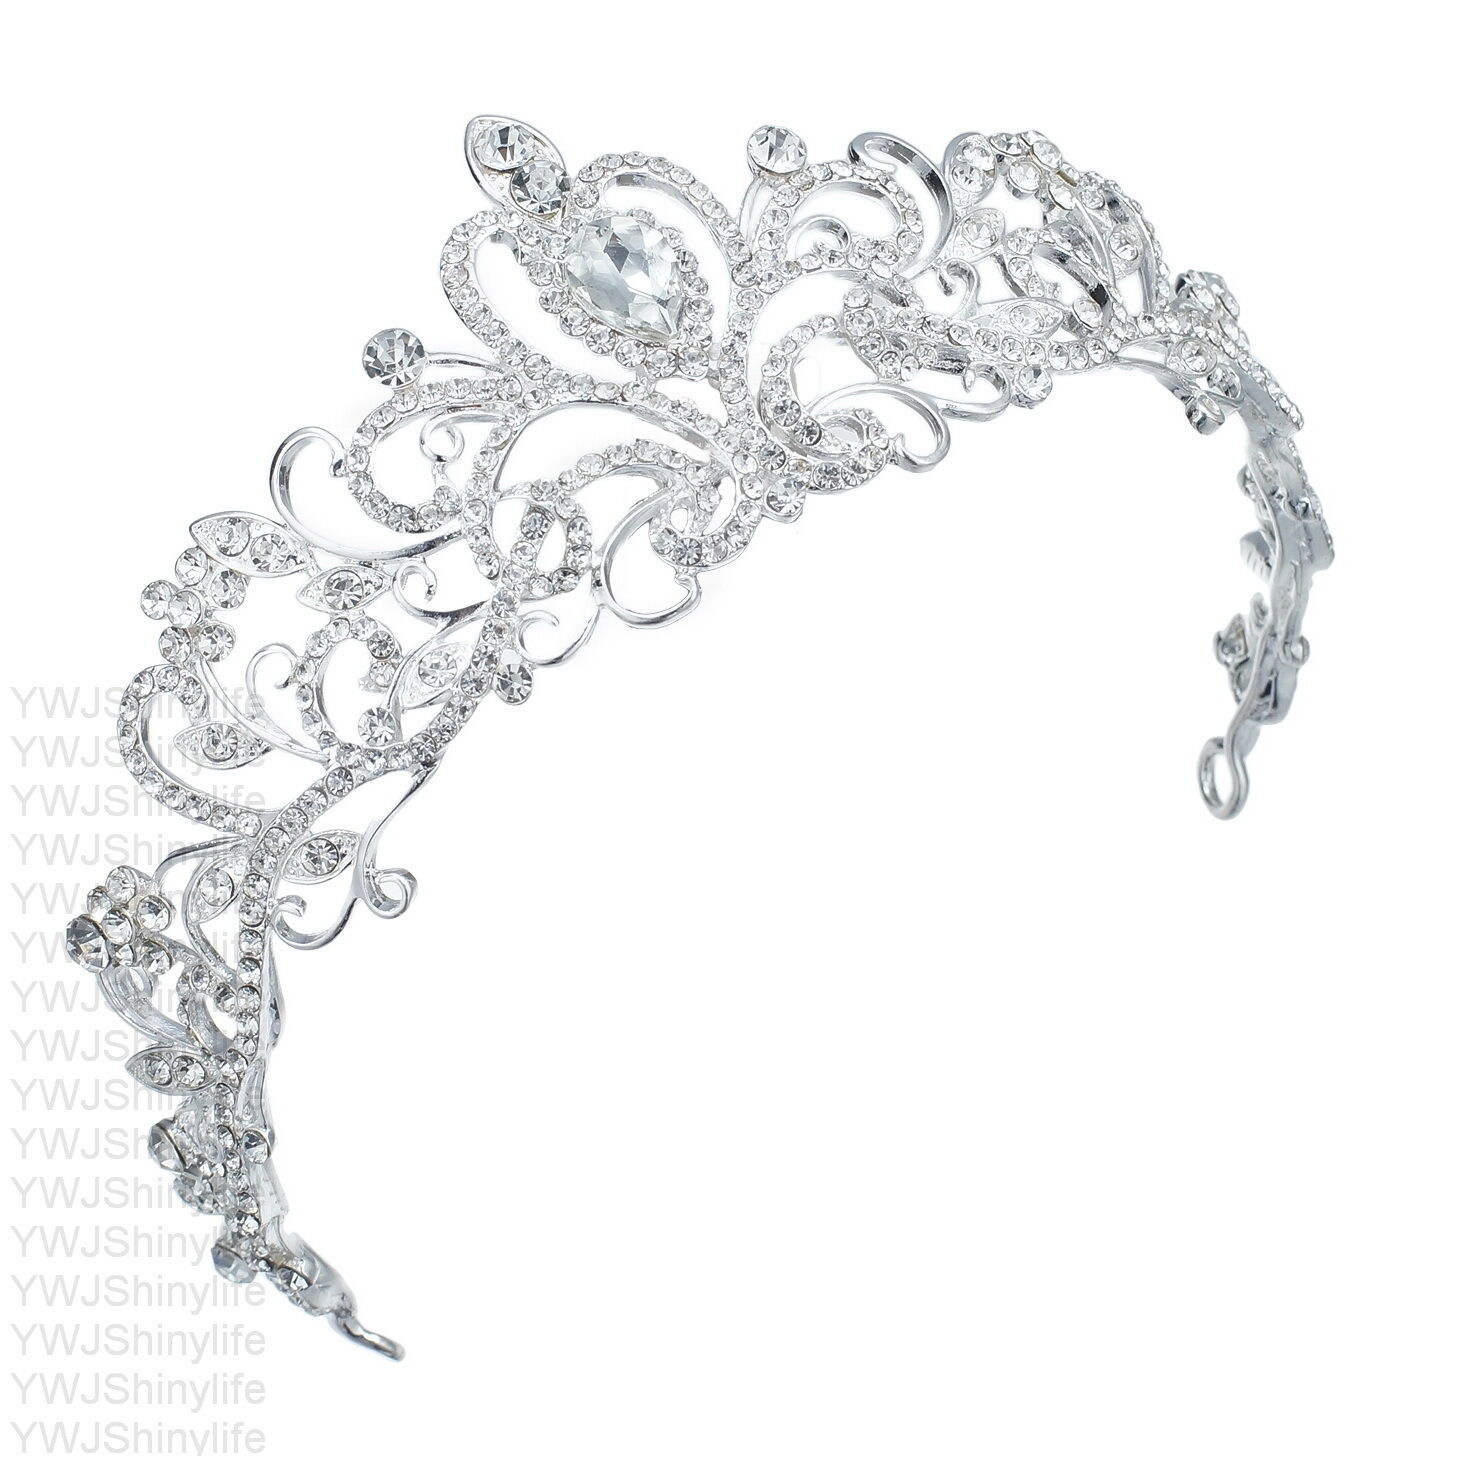 TQ-01 Holy White Clear Rhinestone Crystal Alloy Bridal Wedding Tiara Crown